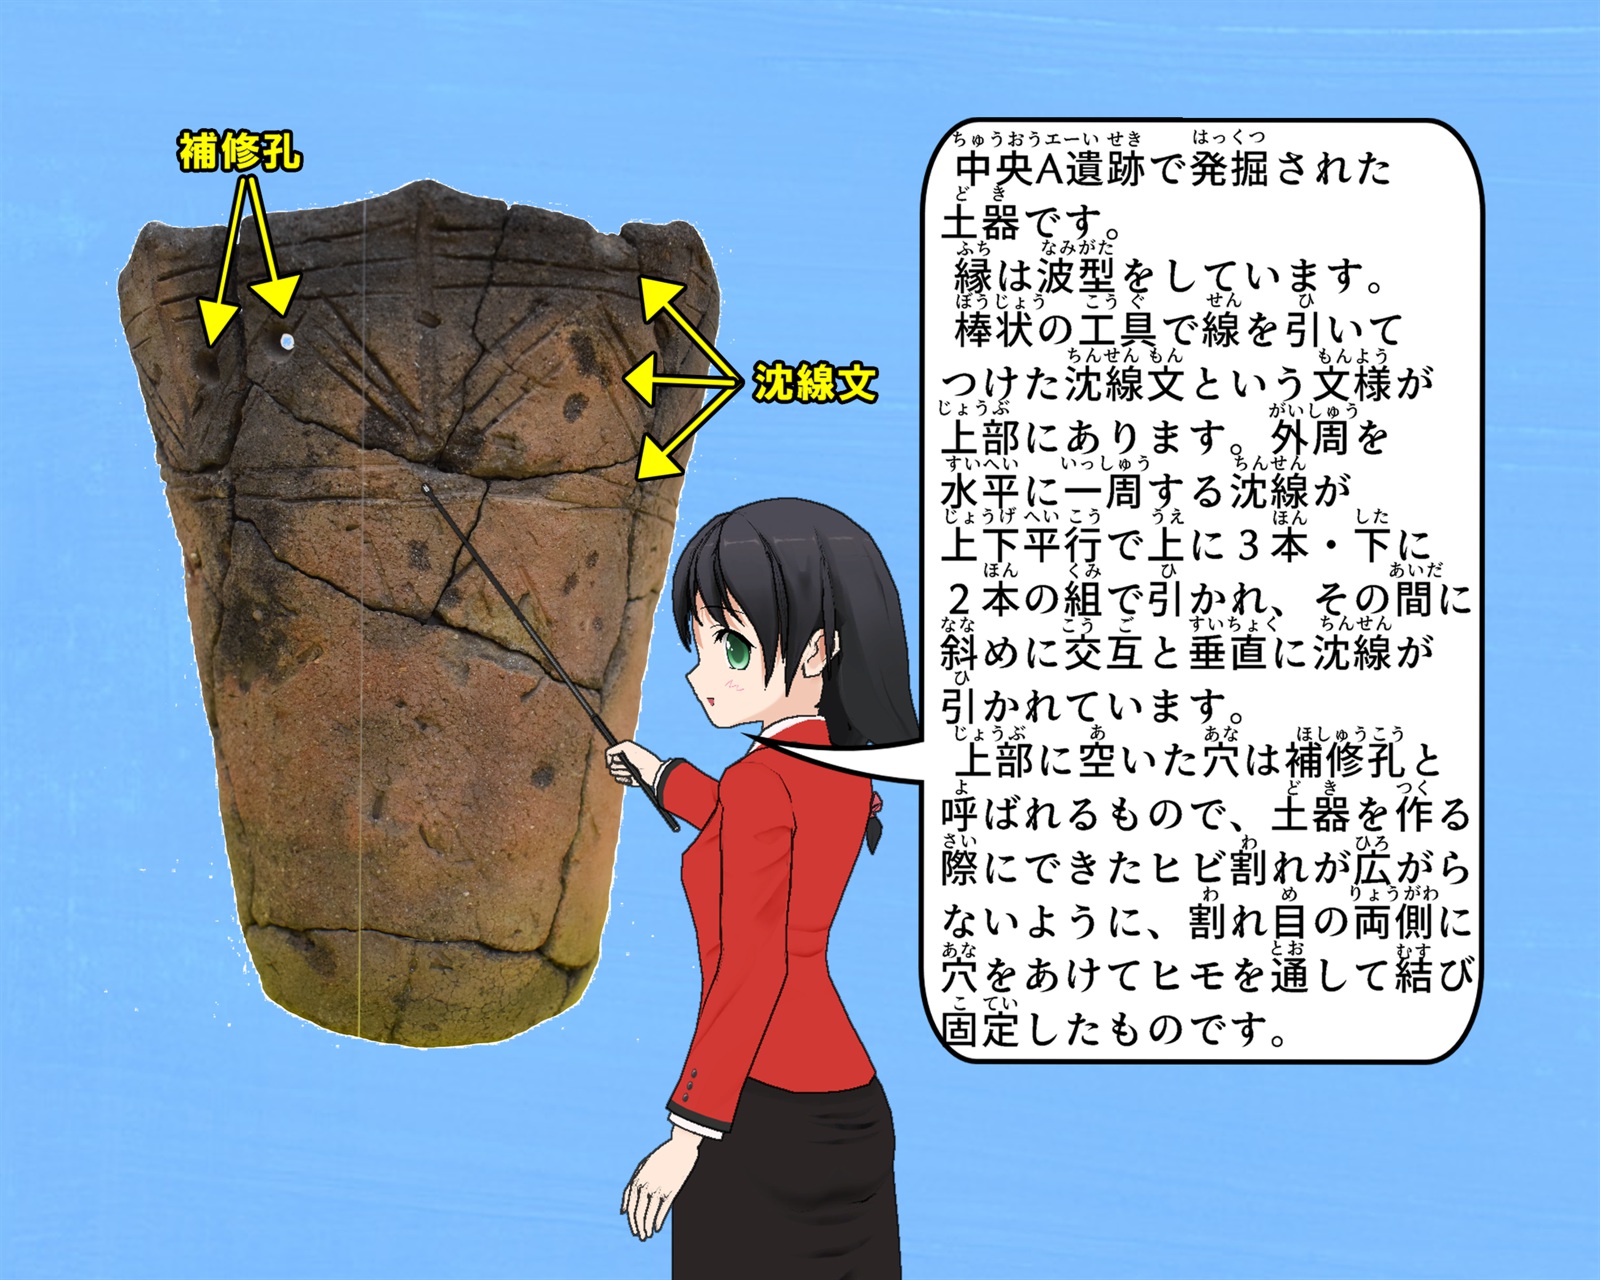 中央A遺跡で発掘された土器の写真について説明をしているイラスト